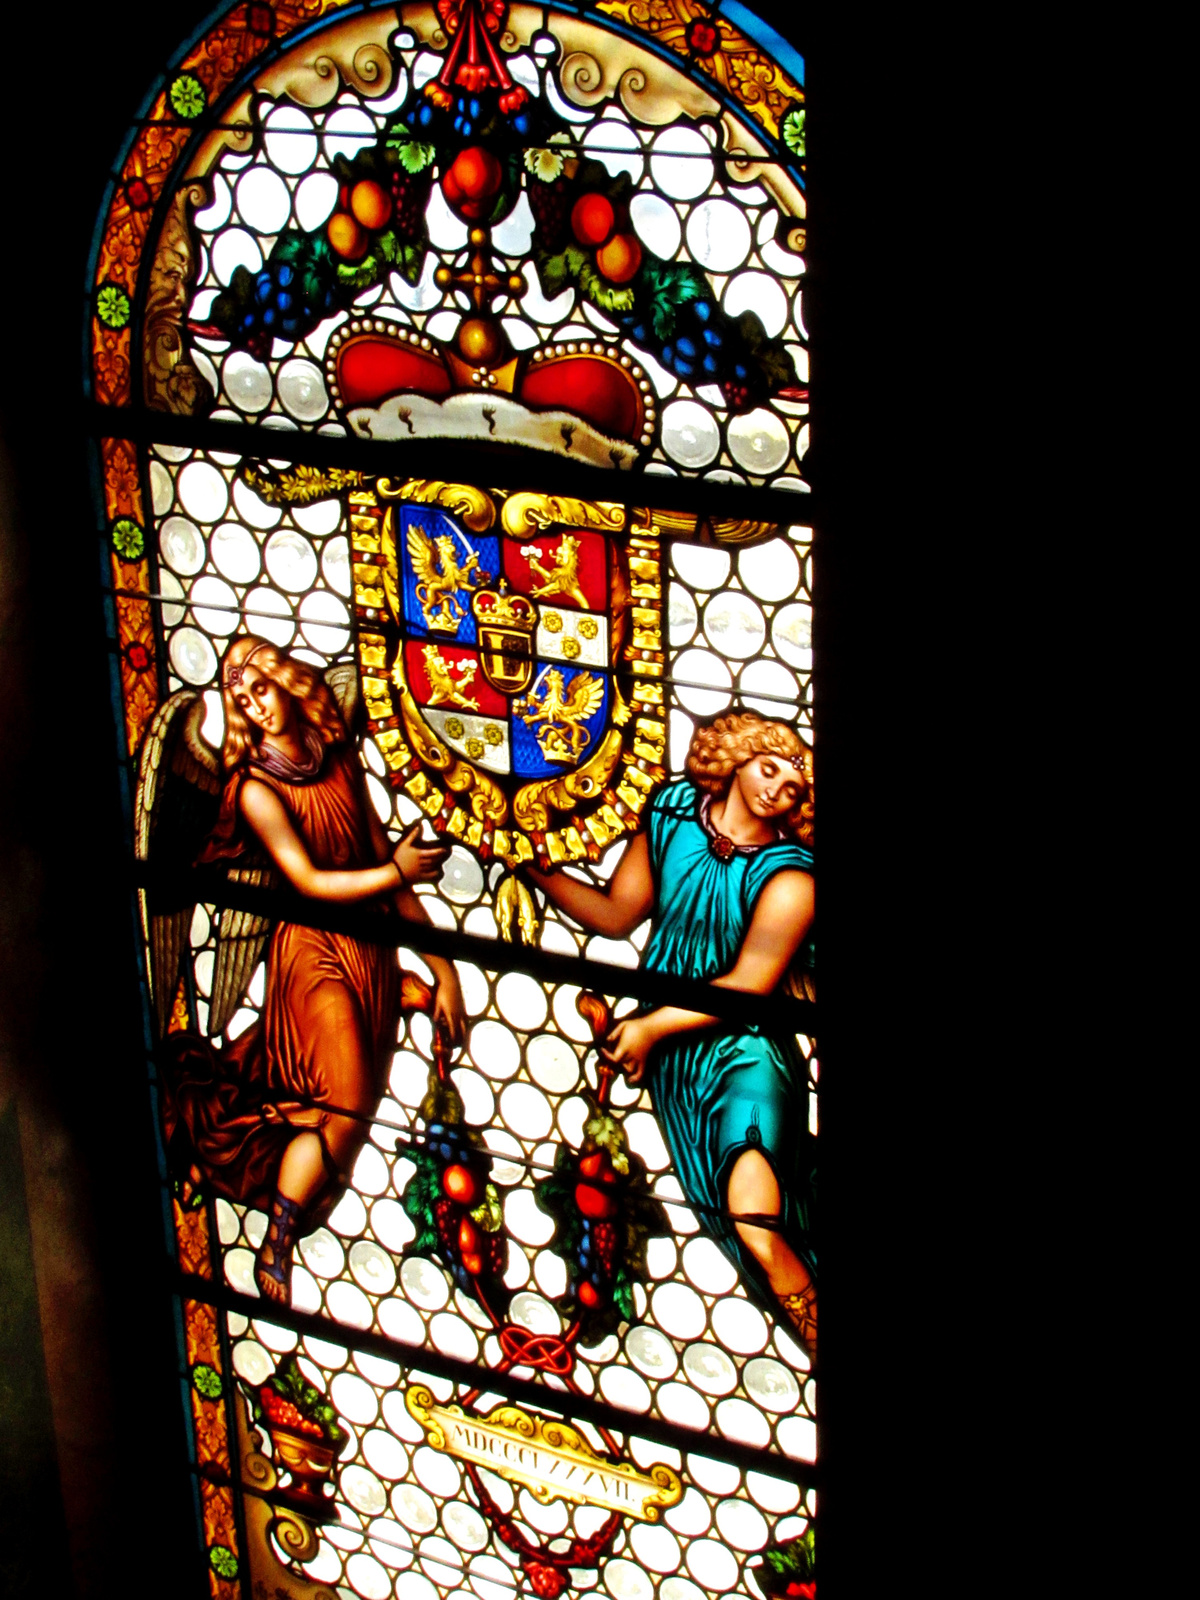 kápolna ablaka oldalnézet